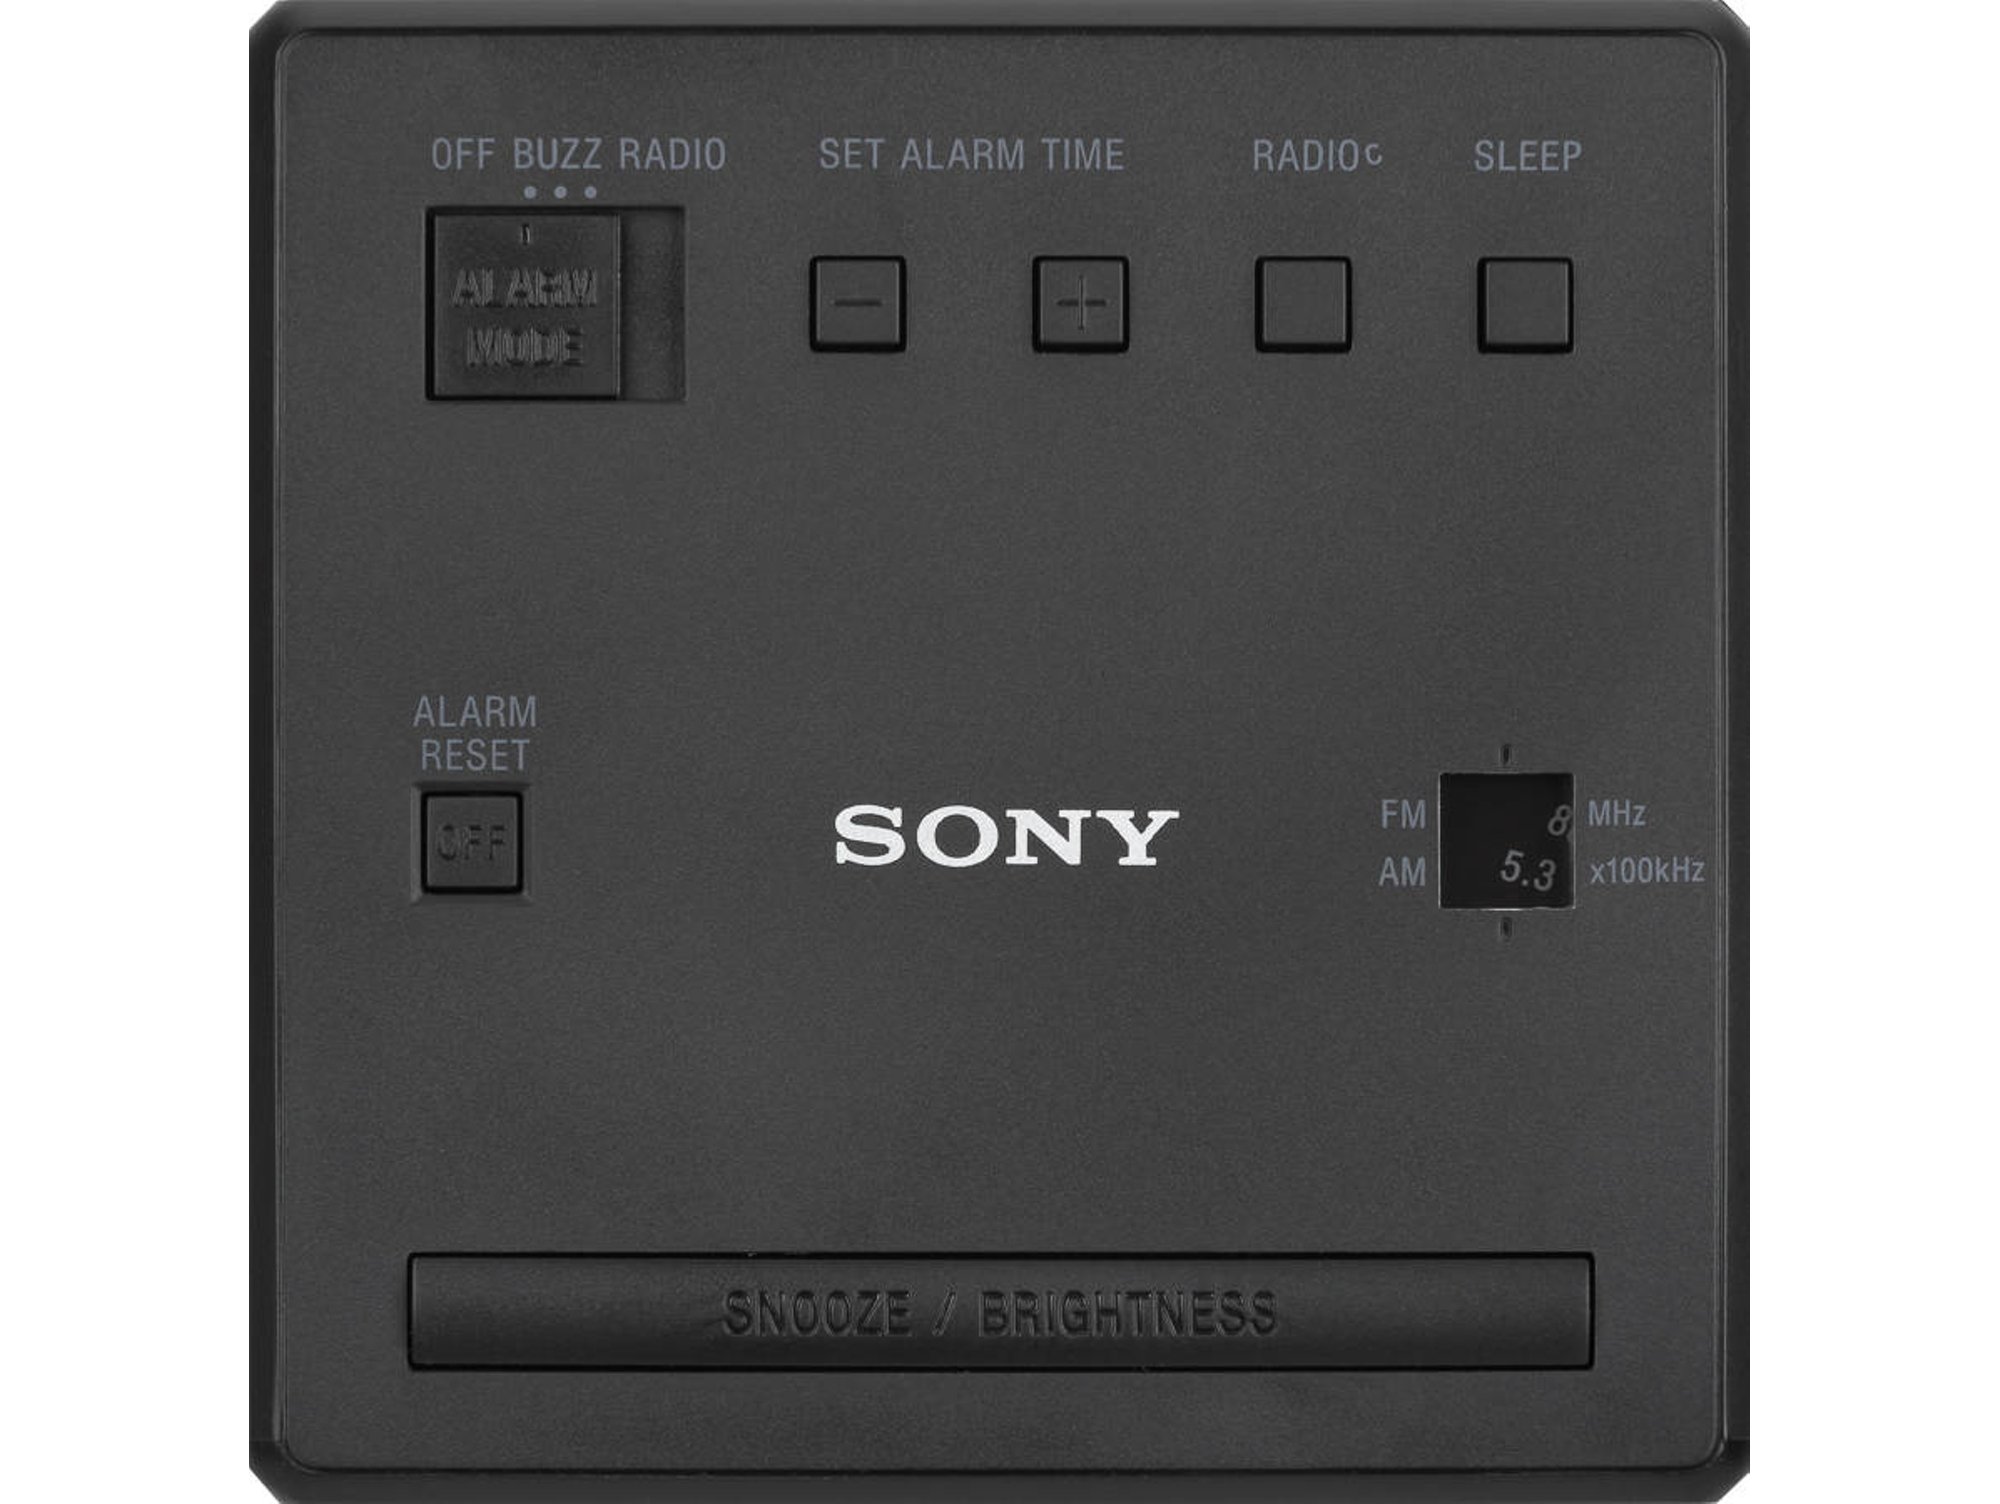 Radio Despertador SONY ICF-C1B (Negro - Digital - AM/FM - Batería